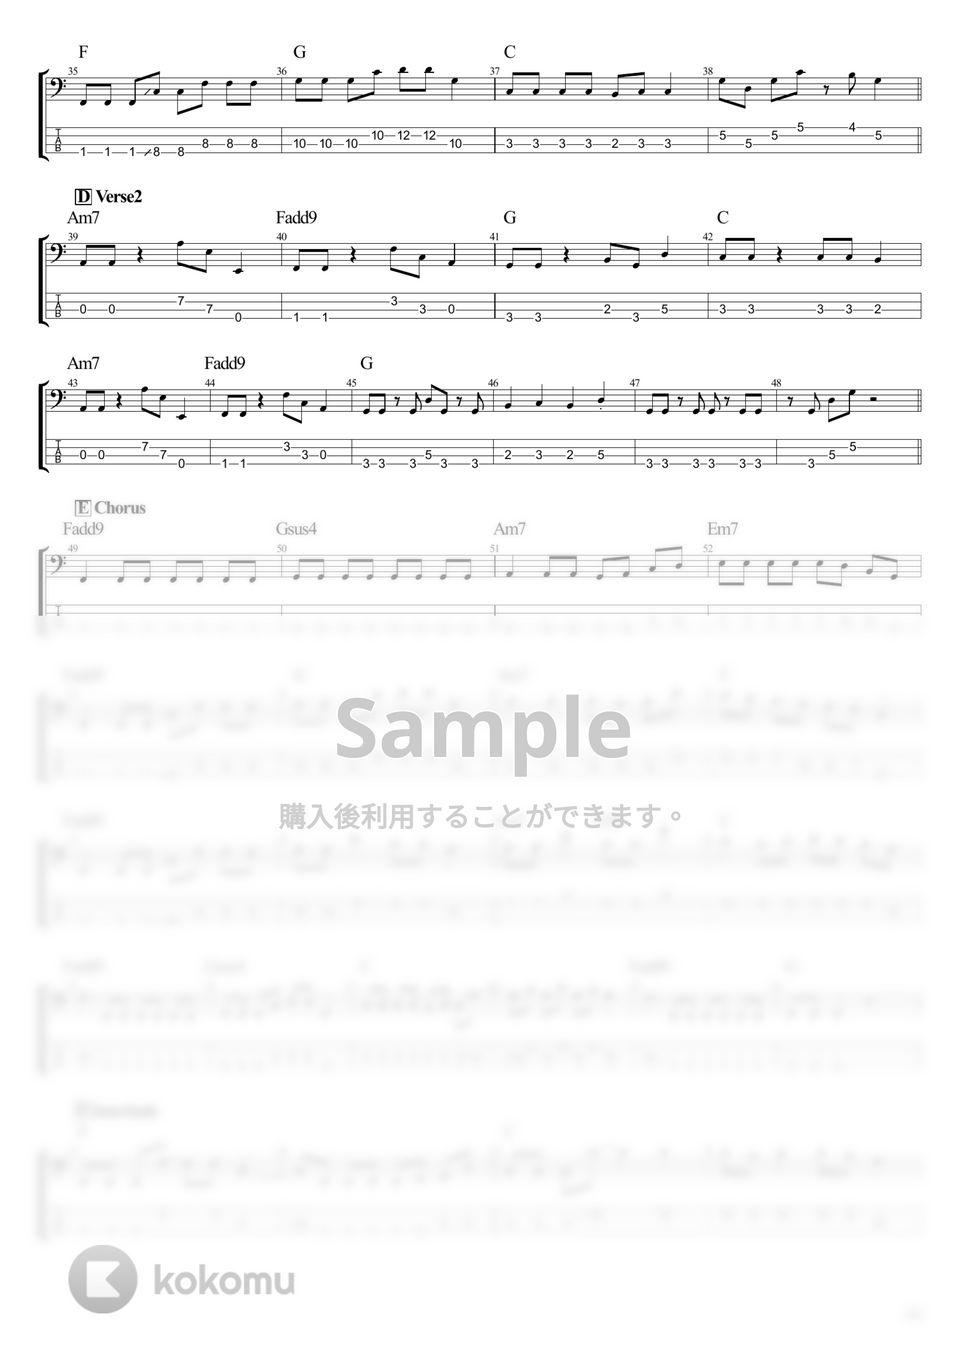 結束バンド - ひとりぼっち東京 (ベース Tab譜 4弦) by T's bass score